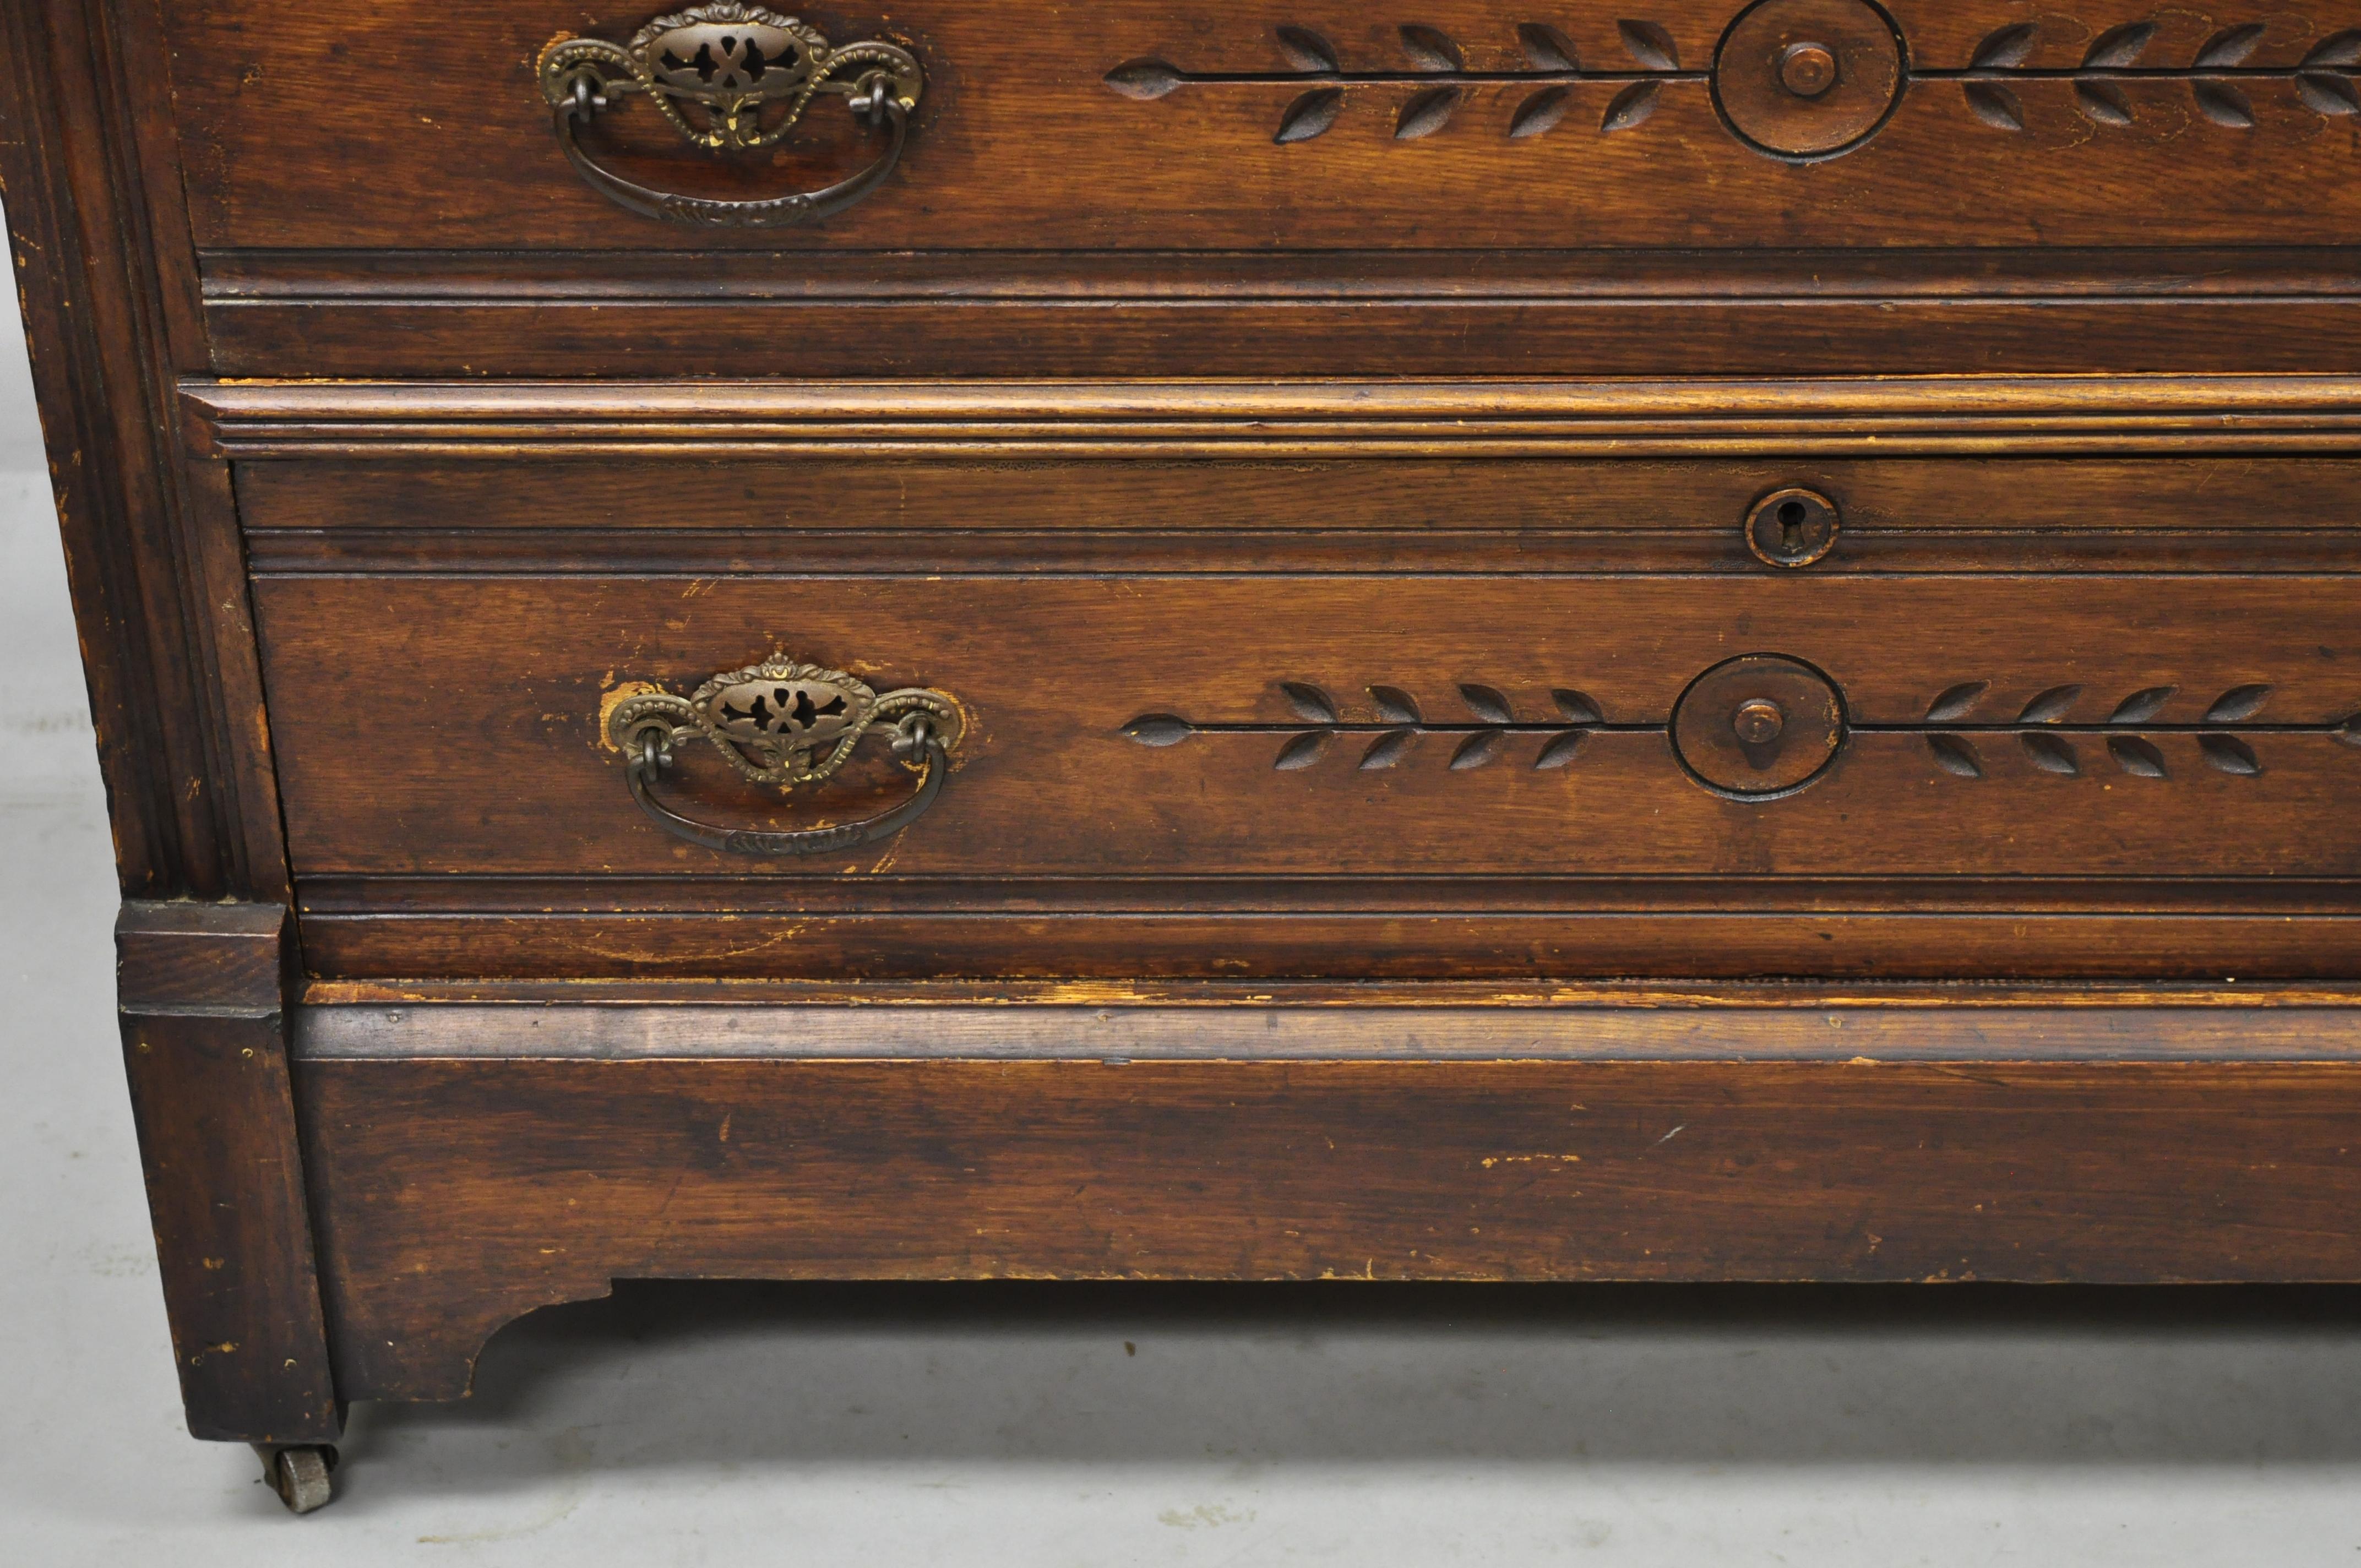 19th Century Antique American Eastlake Victorian Walnut 3 Drawer Dresser Chest with Mirror